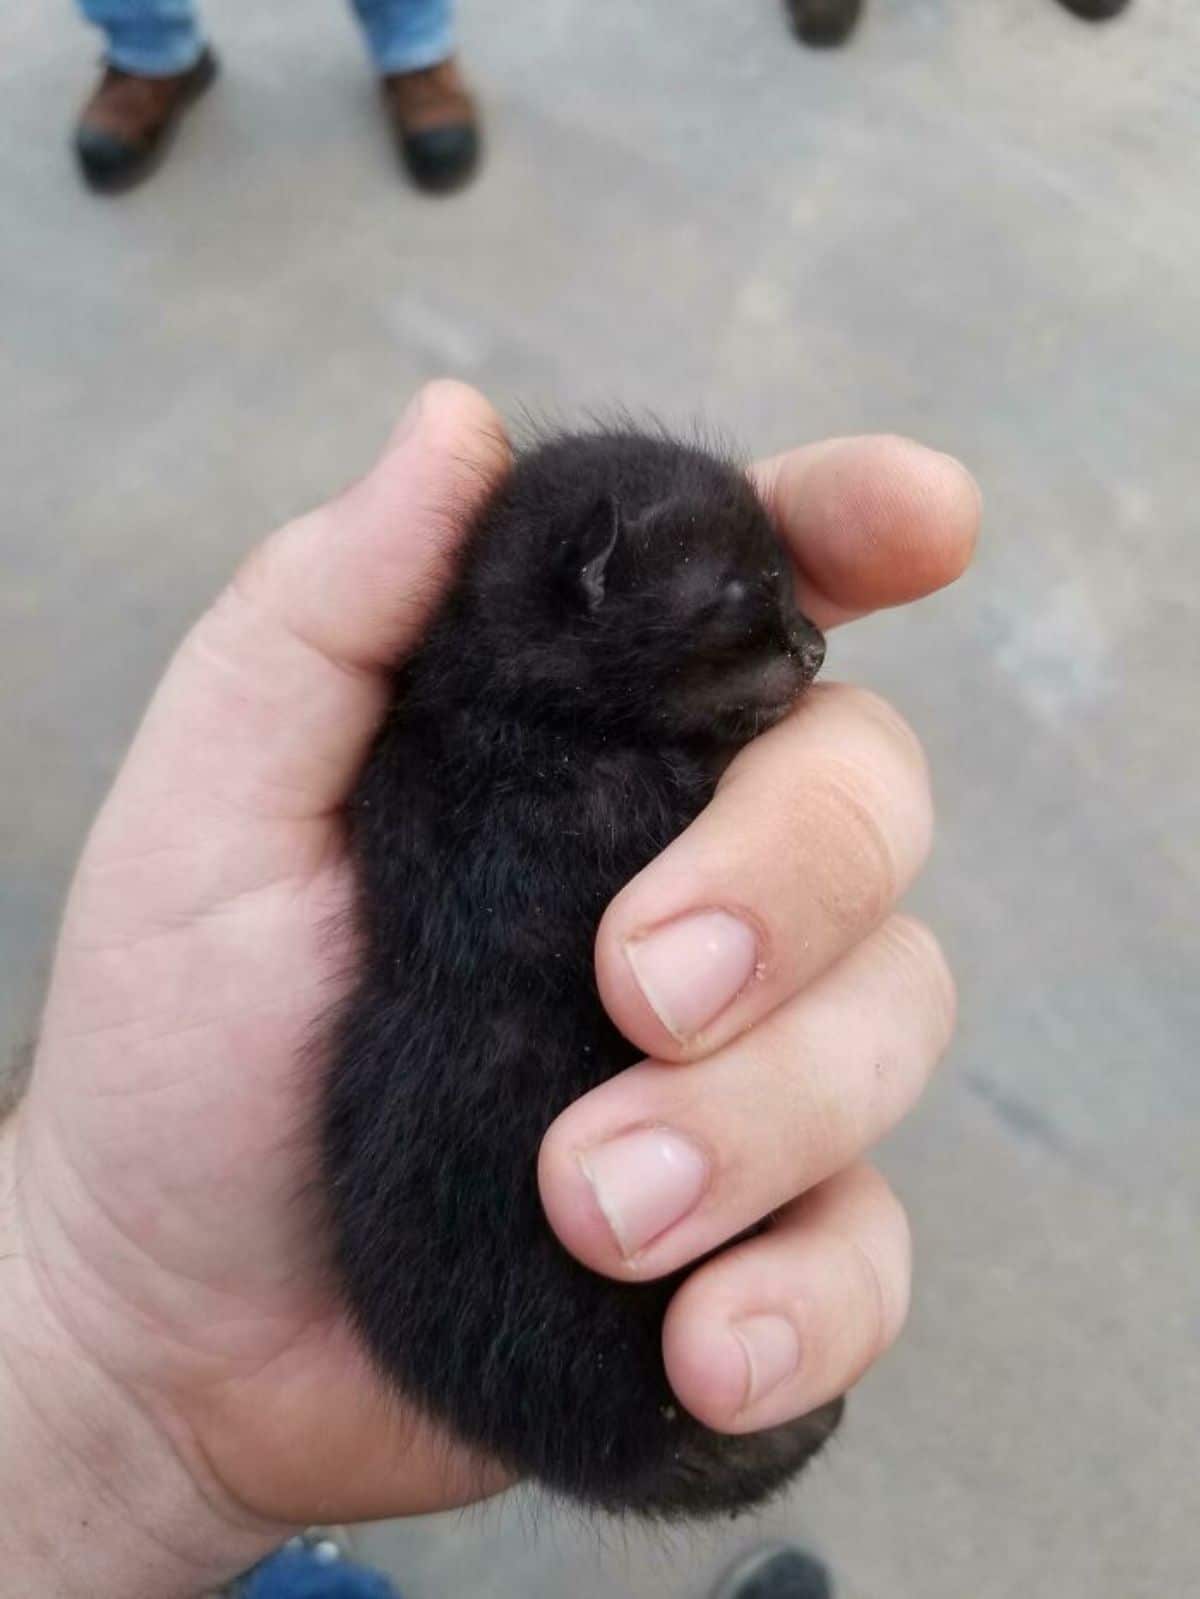 black newborn kitten sleeping in someone's hand